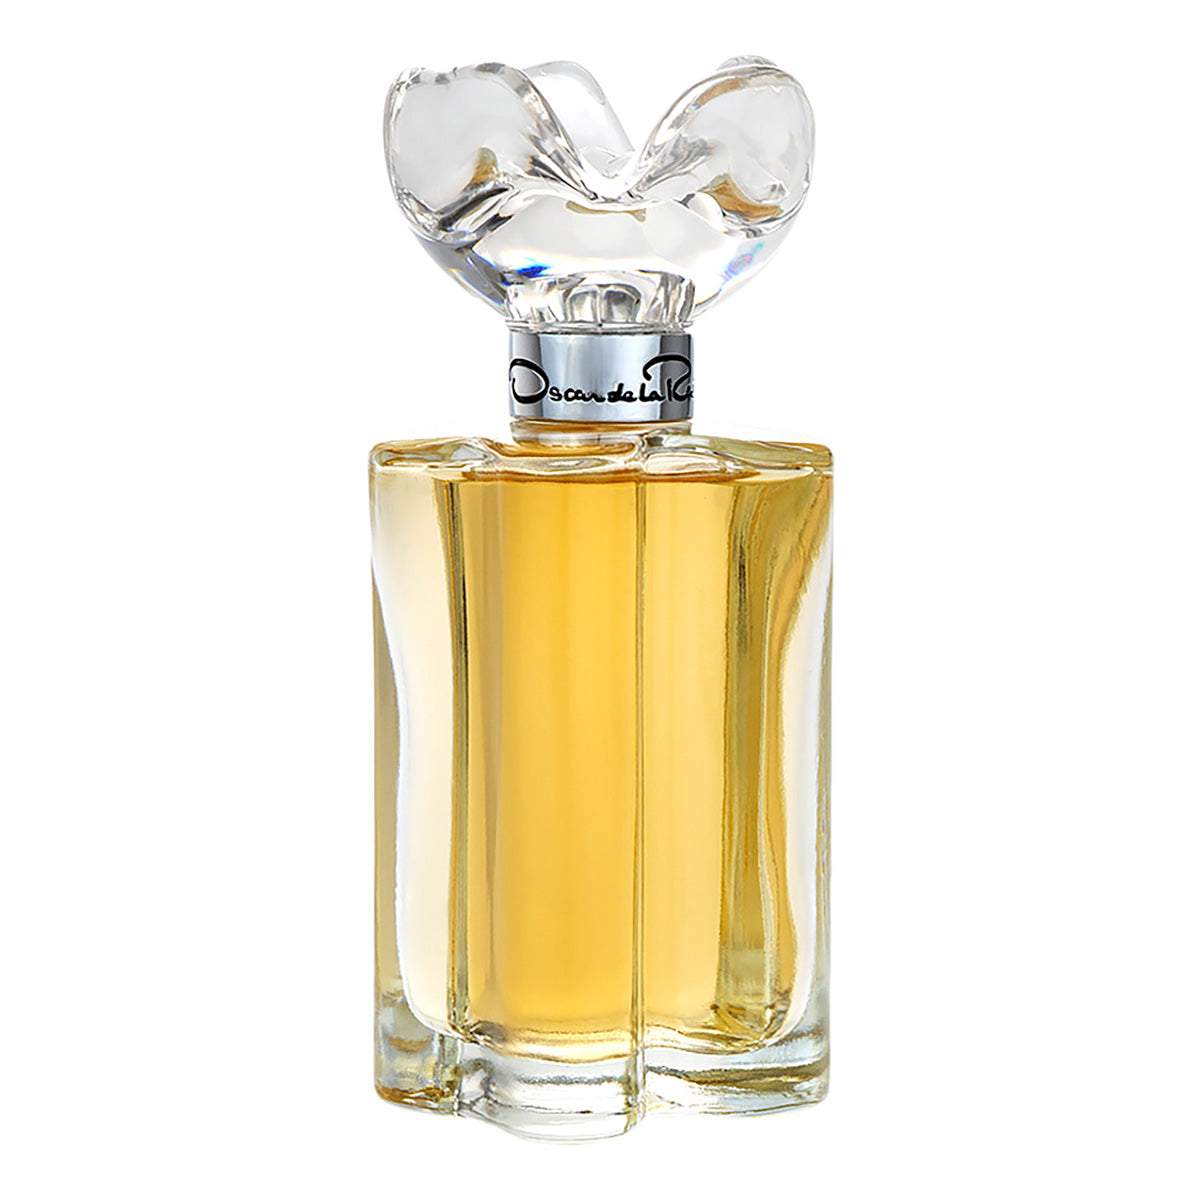 Photos - Women's Fragrance Oscar de la Renta Esprit d'Oscar Eau de Parfum 100ml Spray - Peacock Bazaa 